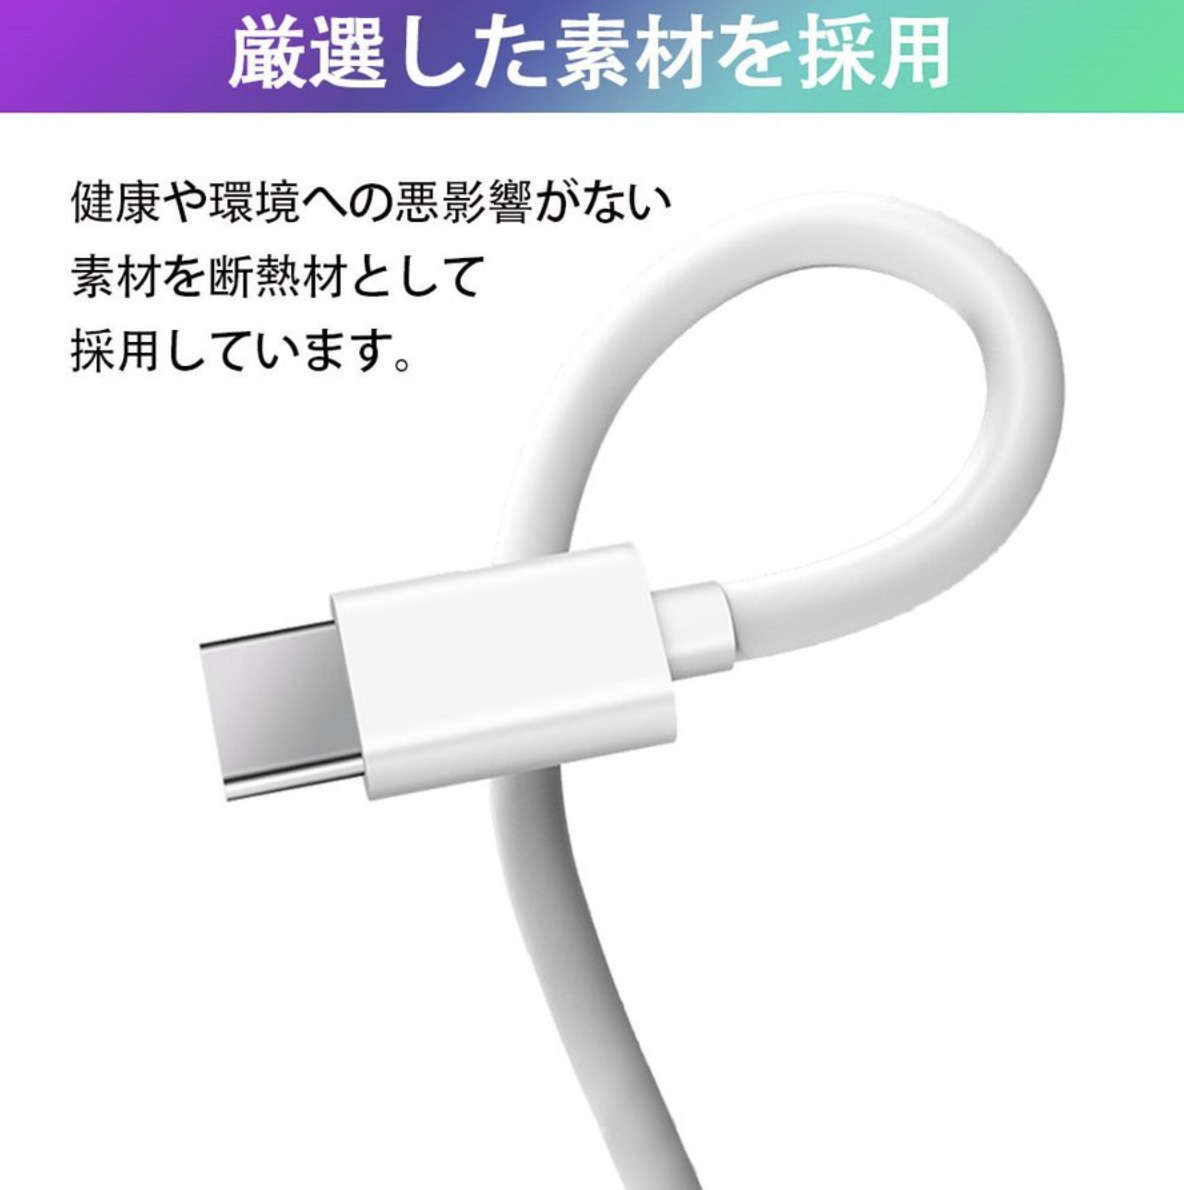 USB C ライトニングケーブル iPhone 充電ケーブル Type C Lightning 急速充電 1m 1.5m 2m 3本セット_画像3